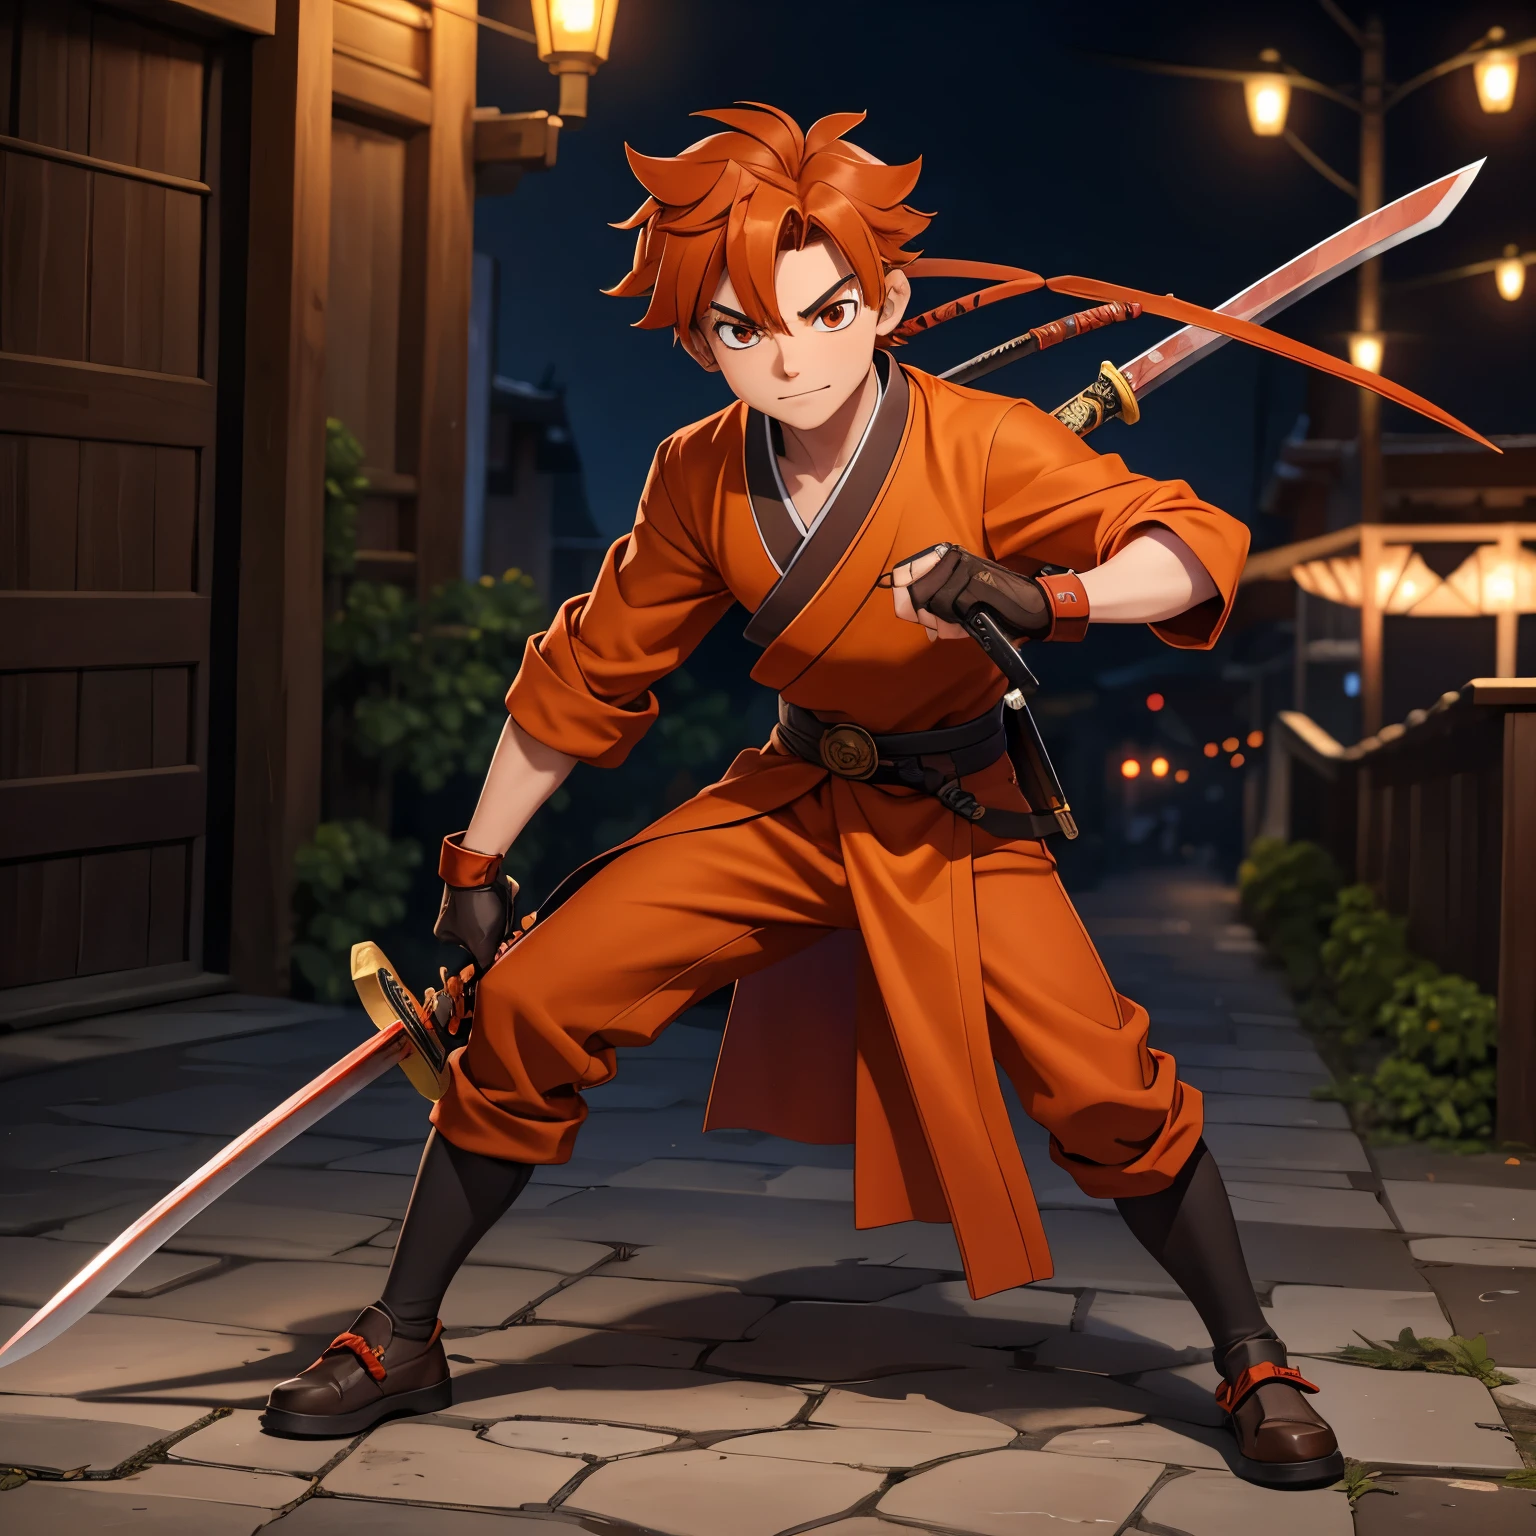 橙色棕色頭髮、武士刀、紅紅色和服的 16 歲斬妖男孩角色